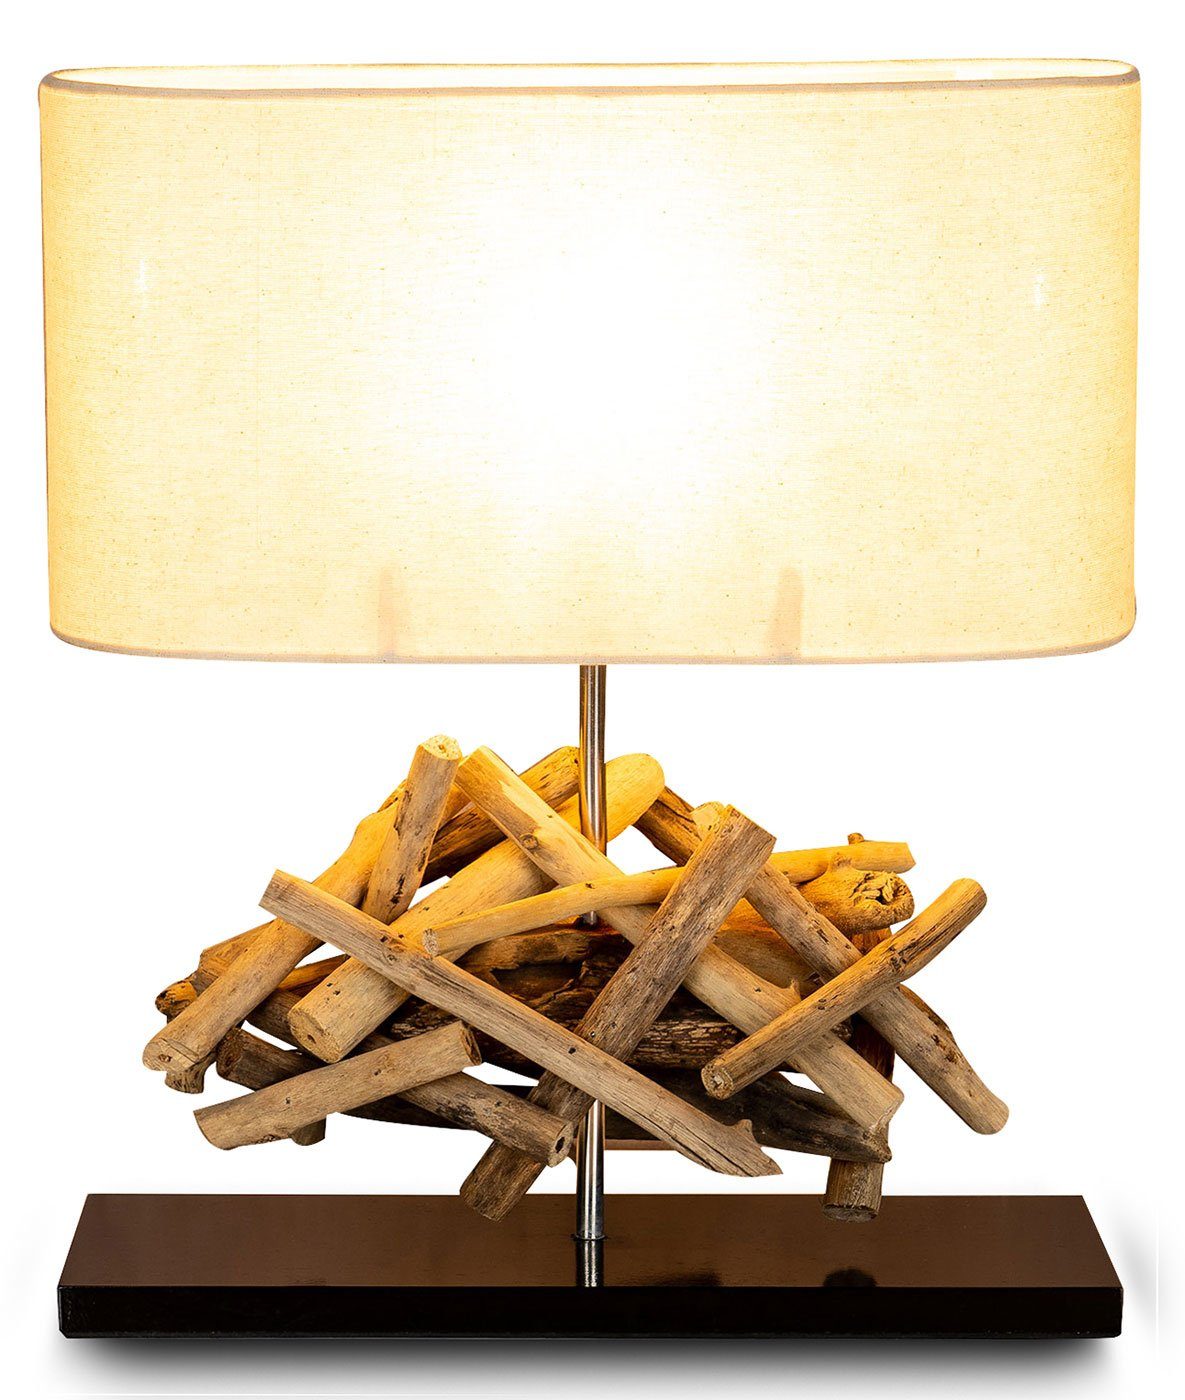 Levandeo® Nachttischlampe, Tischlampe Höhe 42cm Treibholz Tischleuchte Holz Lampe Teakholz Deko